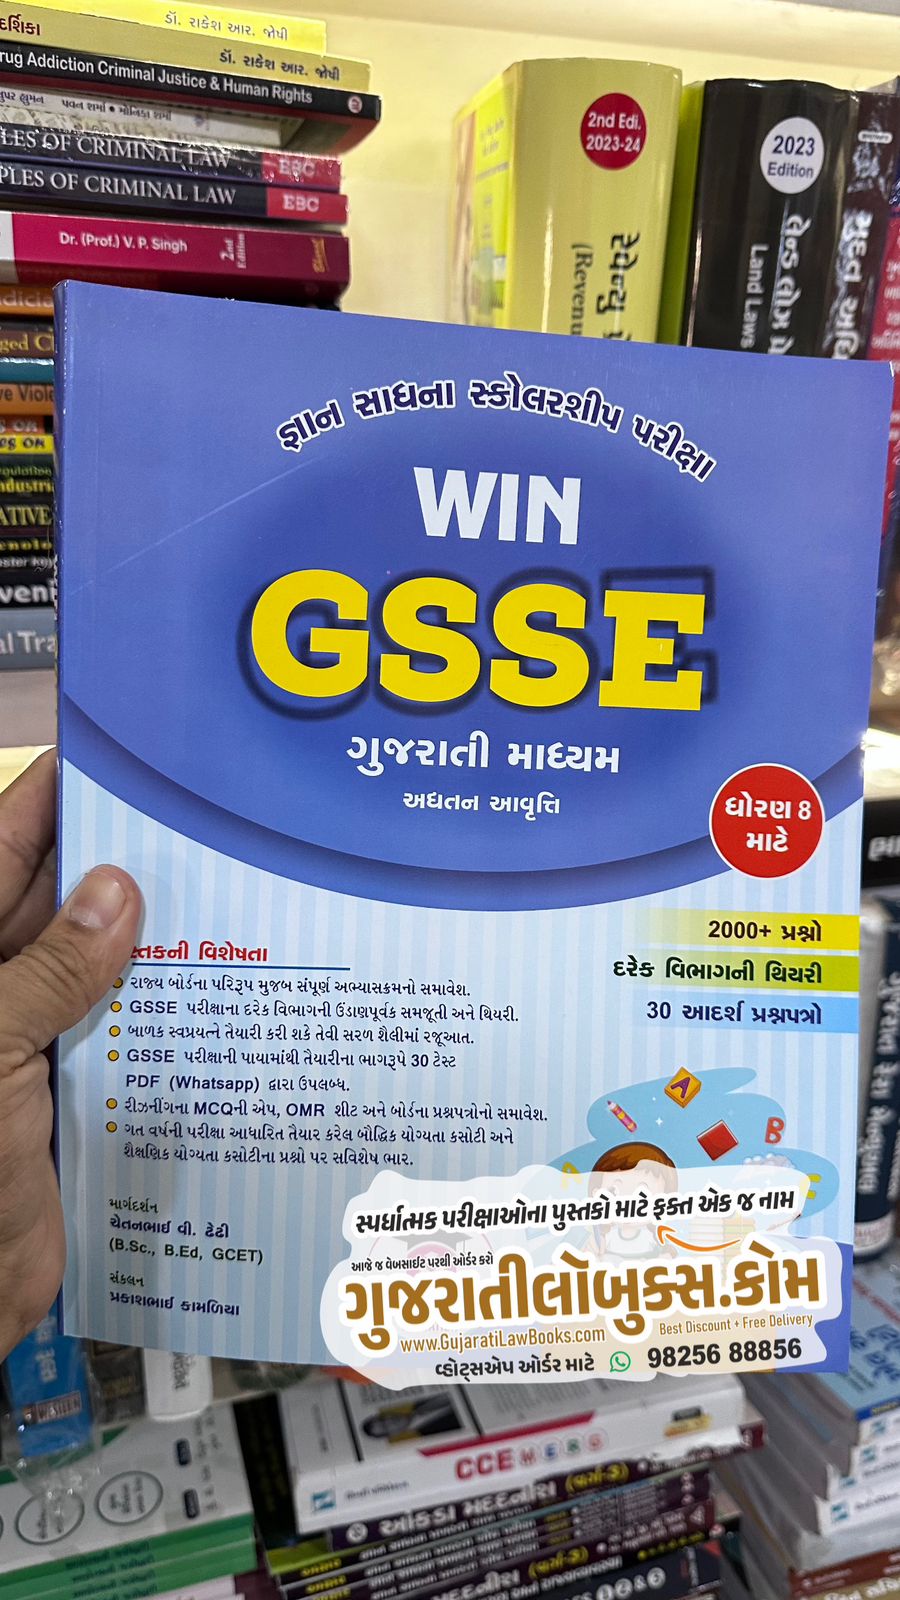 Vision Win GSSE - Gyan Sadhna Prakharta Shodh Pariksha - Dhoran 8 - Latest 2024 Edition Vision Win Help Publication